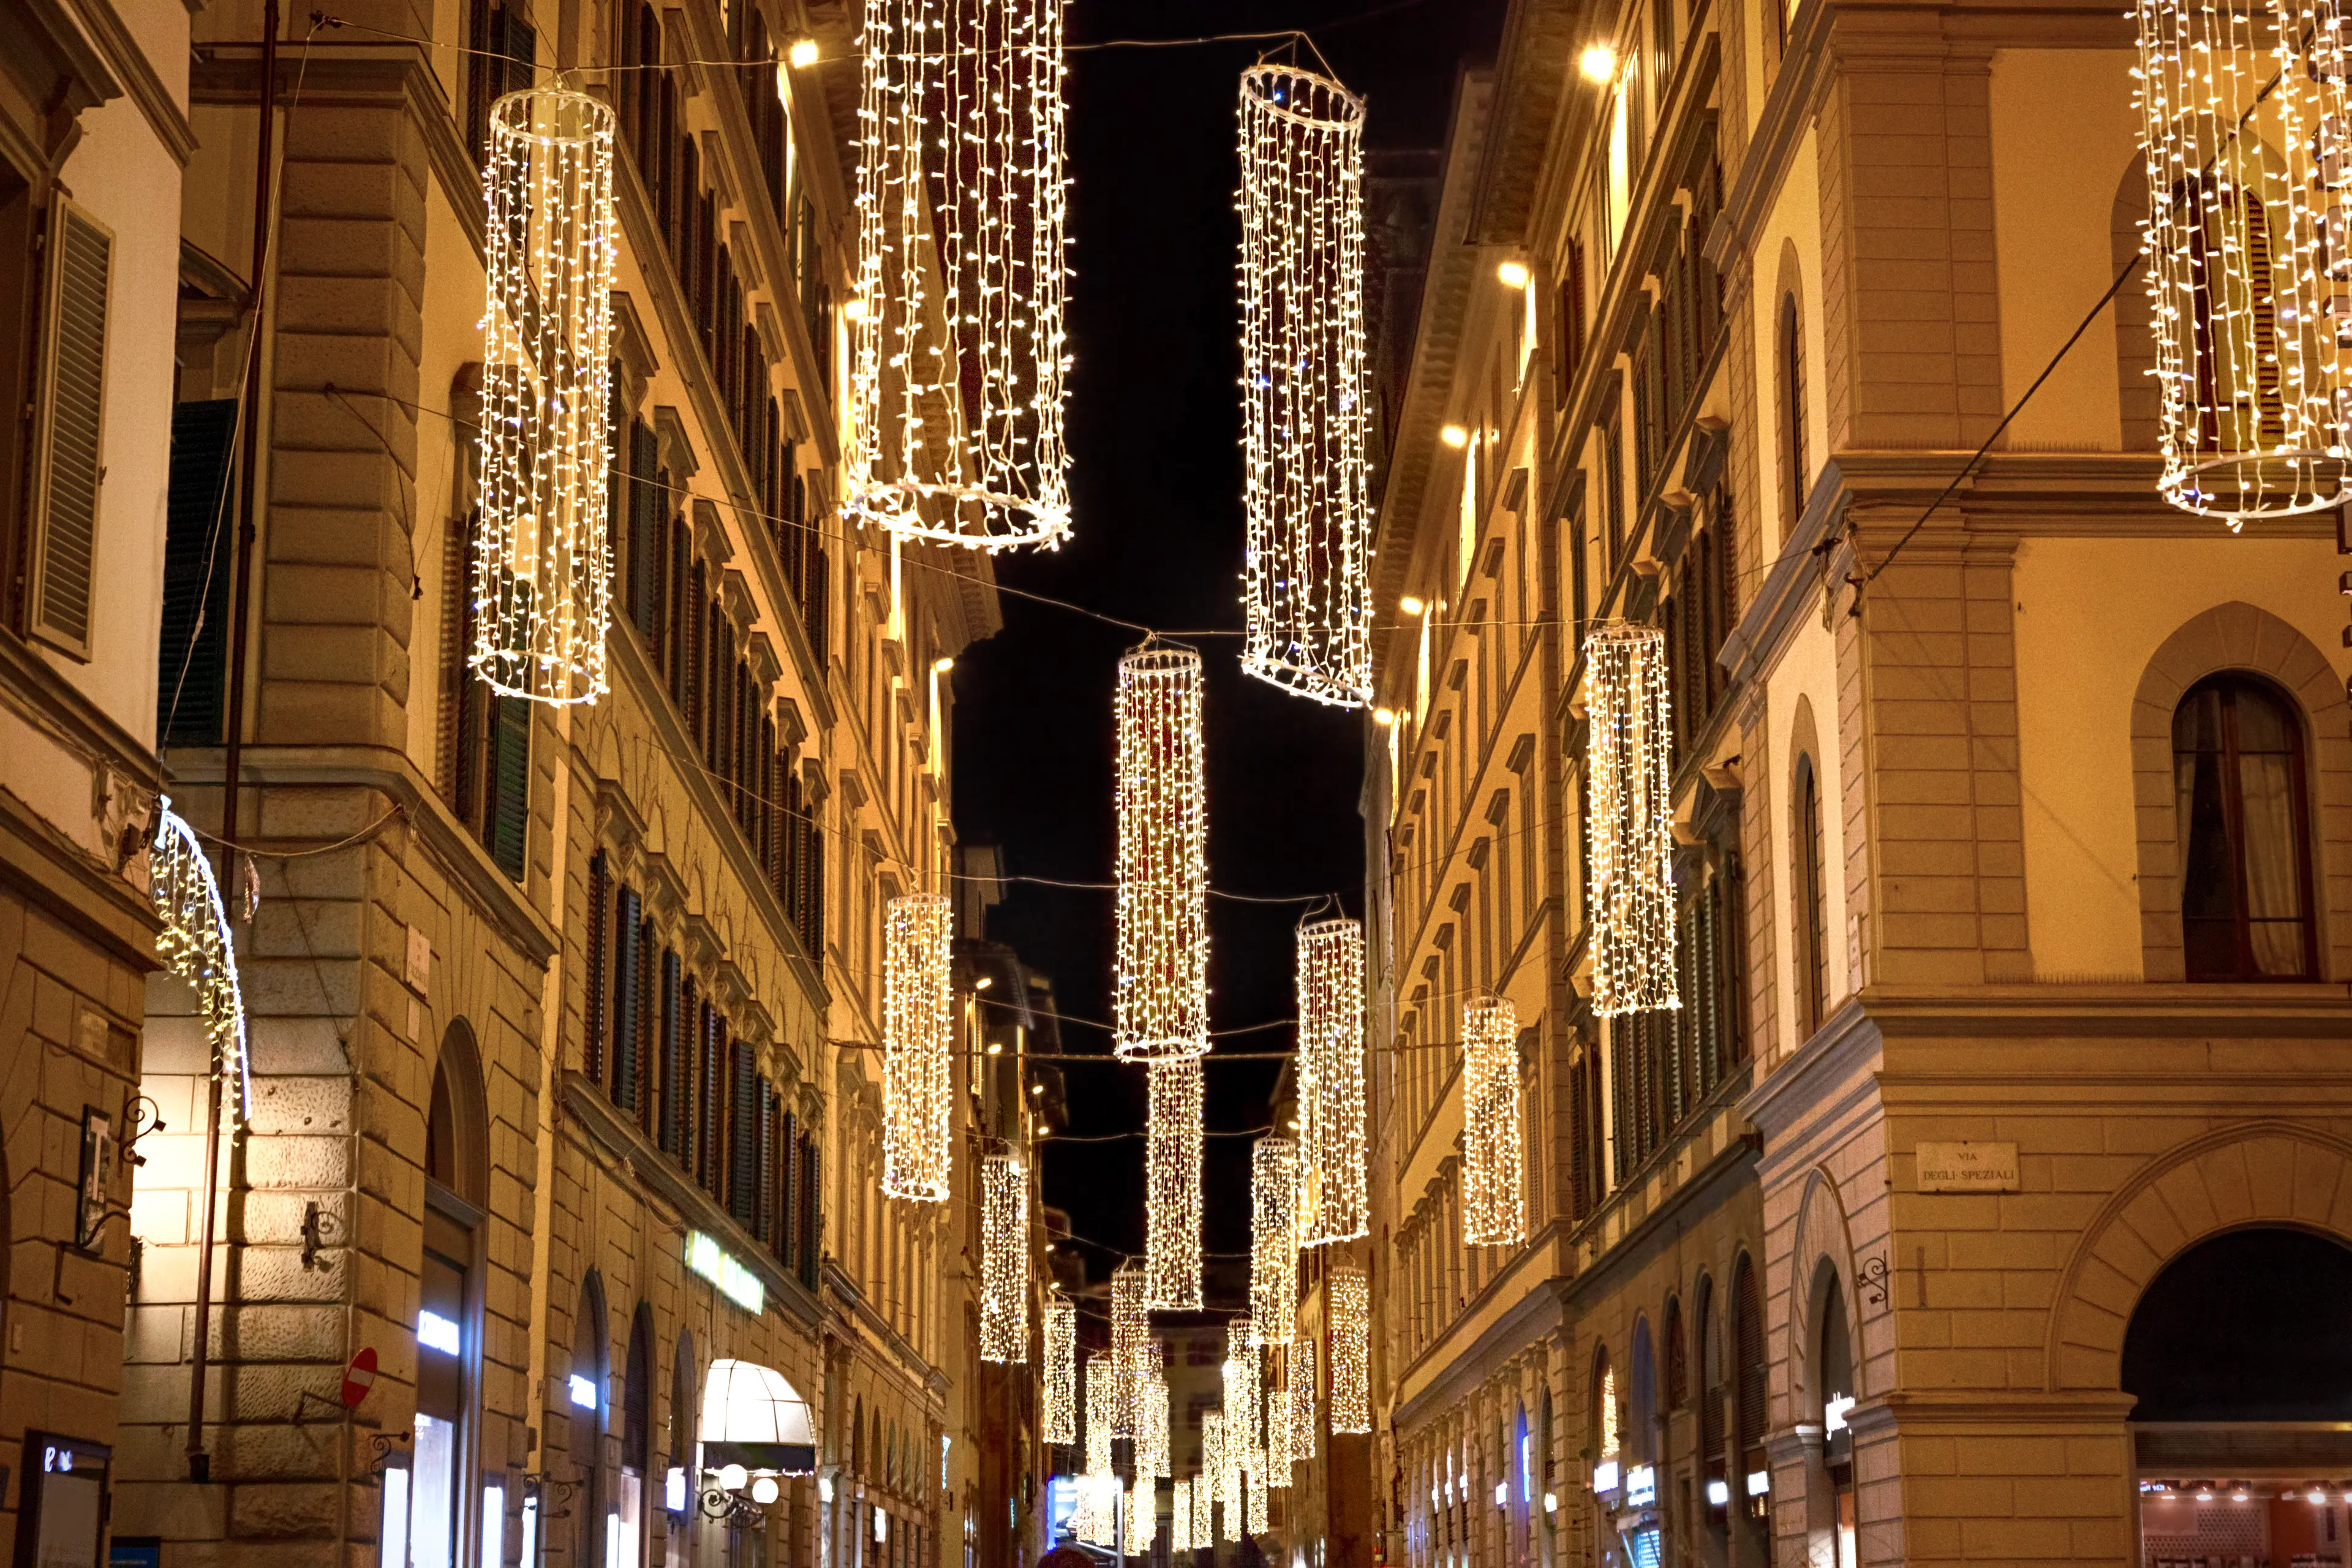 Illuminated Christmas street